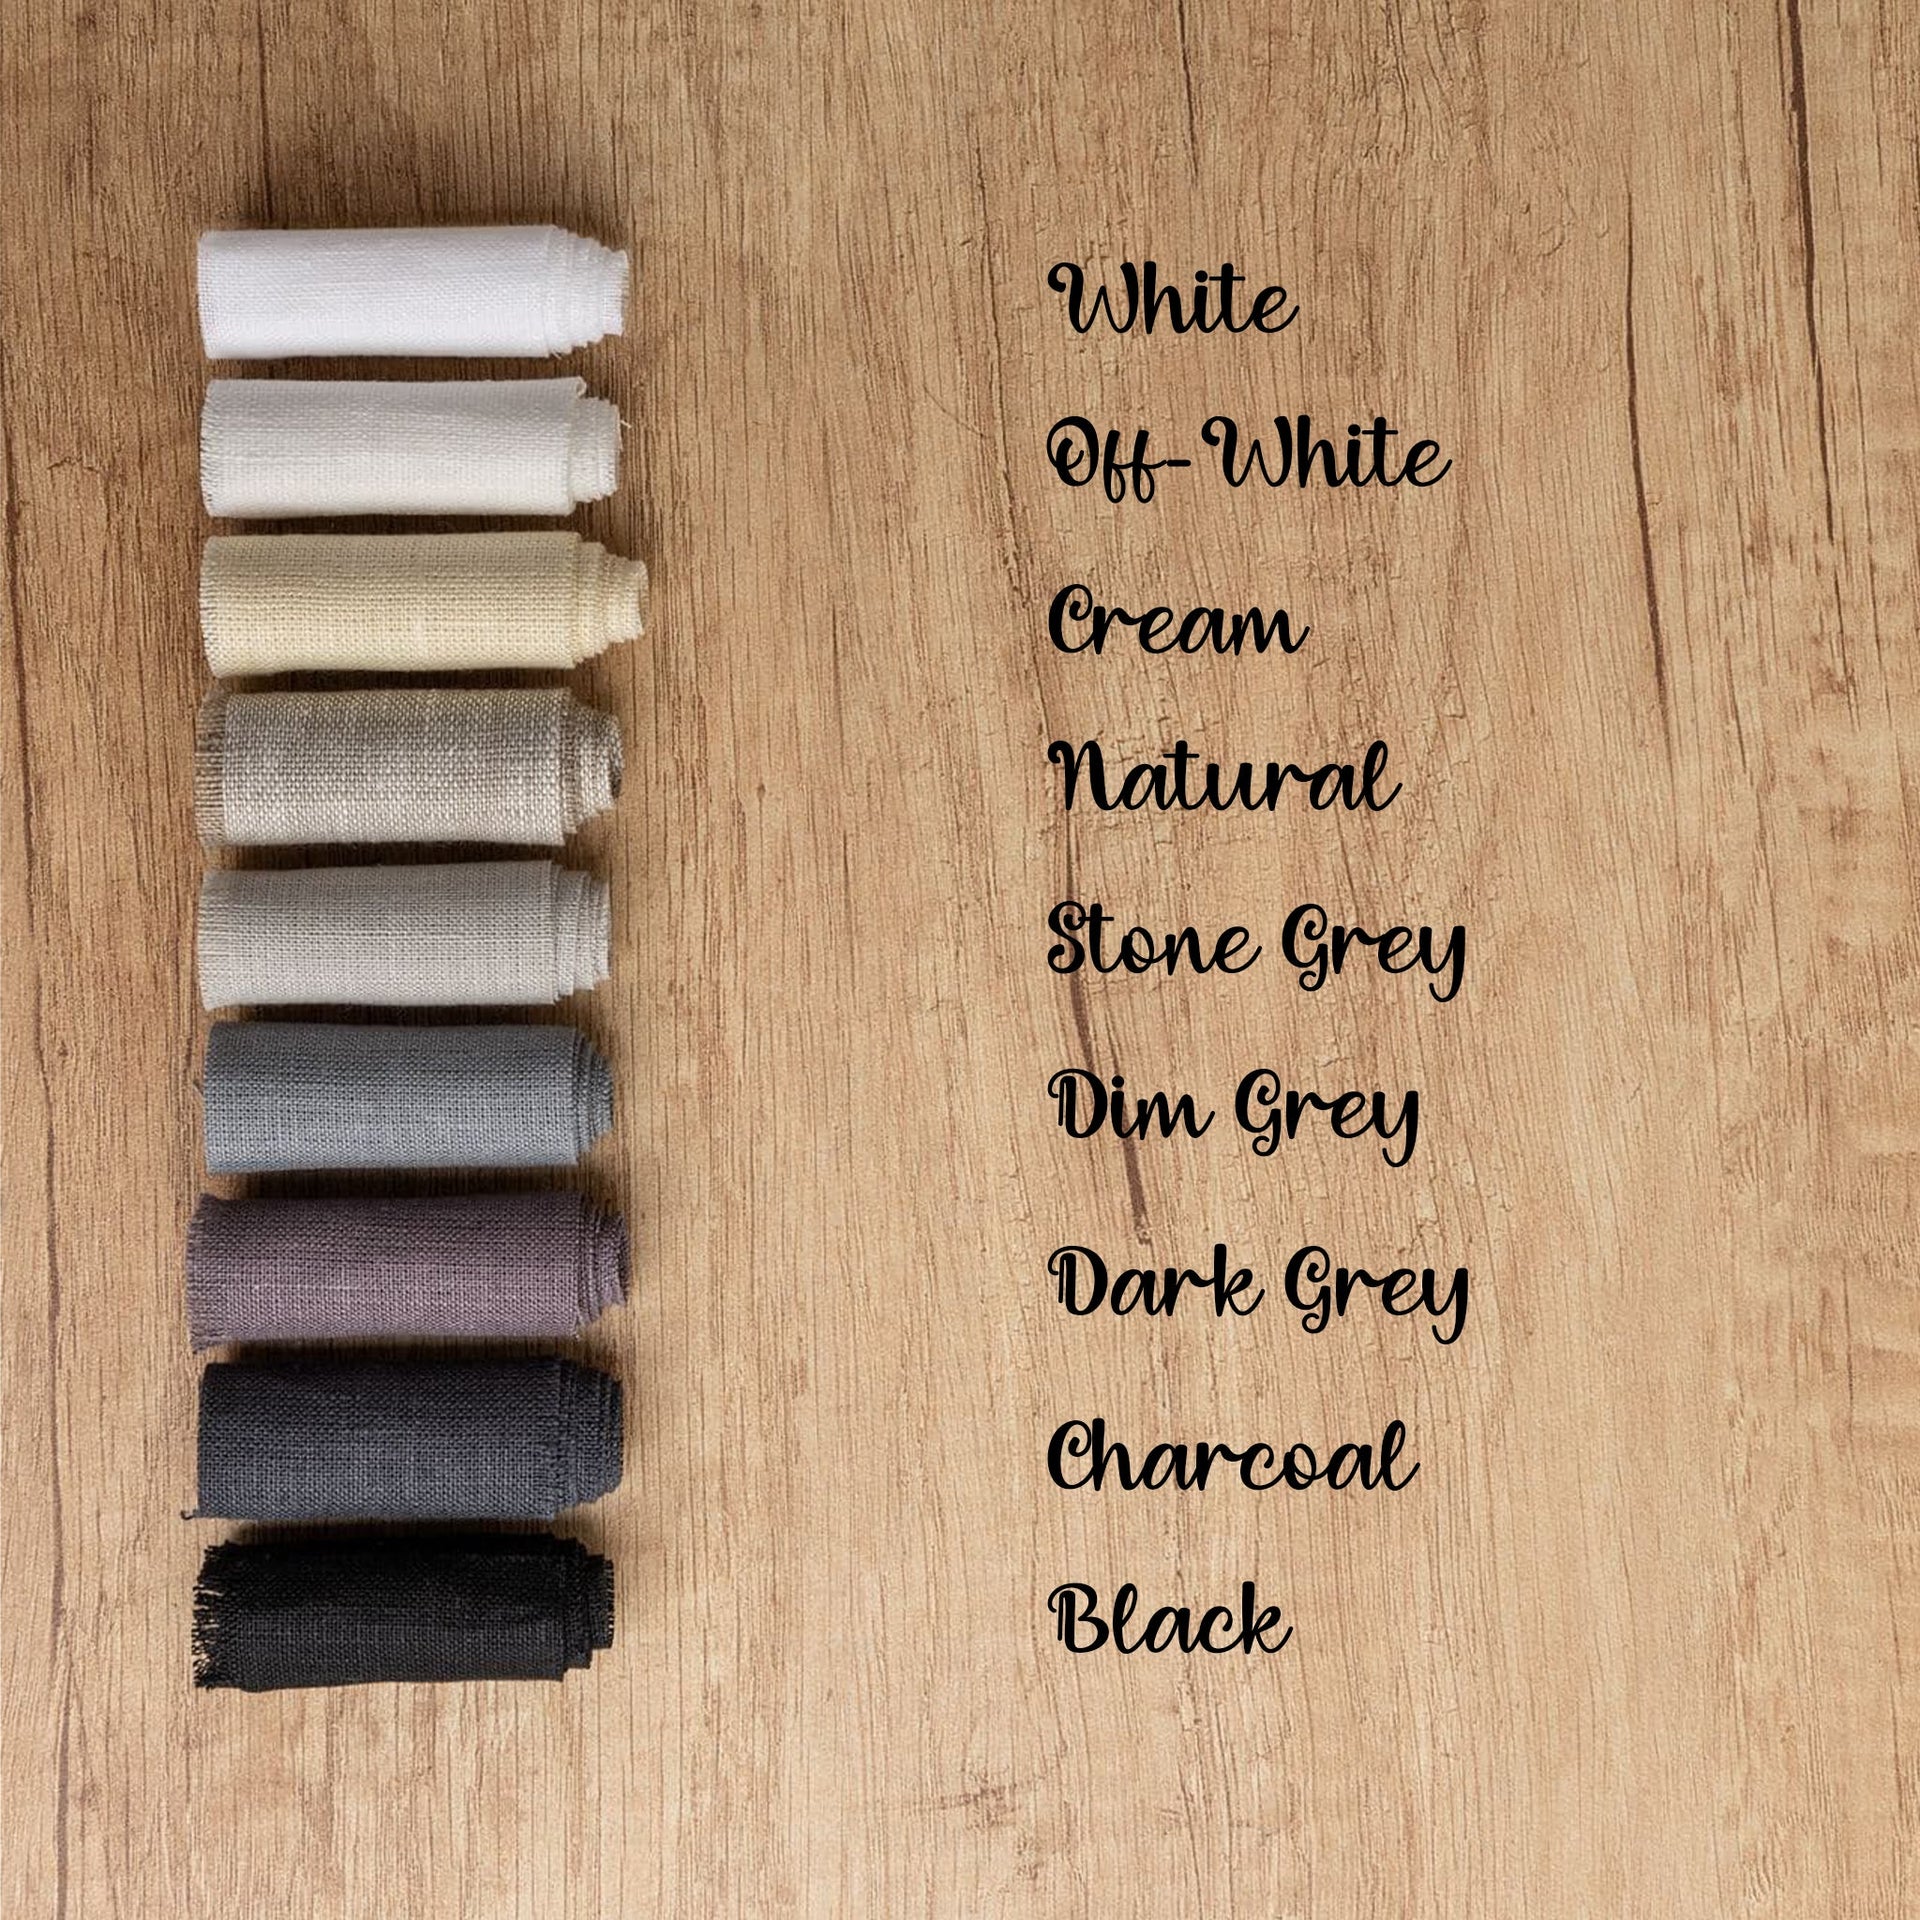 @ color:Stone Grey, color:Dim Grey, color:Black, color:Dark Grey, color:Off-White, color:Cream, color:Natural, color:Dark Grey, color:Charcoal